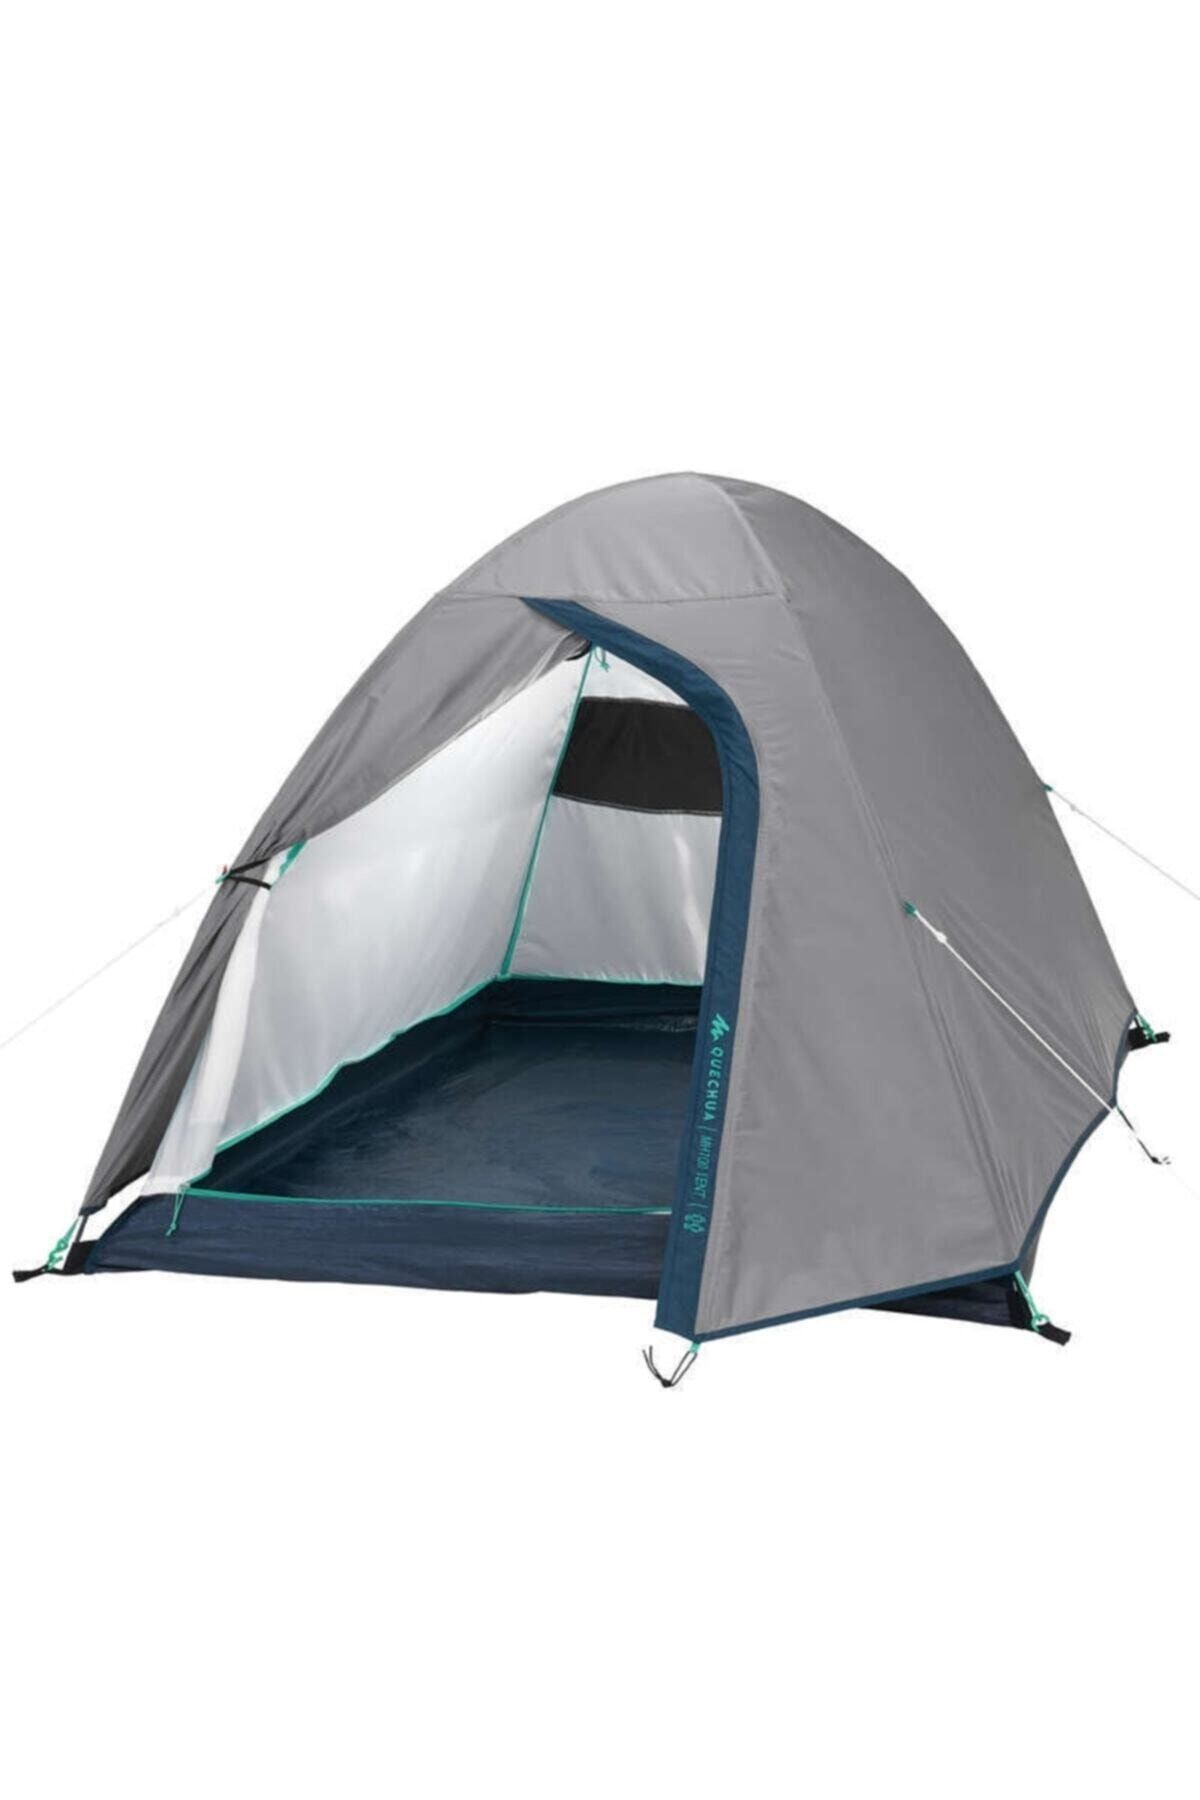 Genel Markalar Çadır - Kamp Çadırı - 2 Kişilik Kamp Çadırı - 2 Kişilik Çadır - Gri